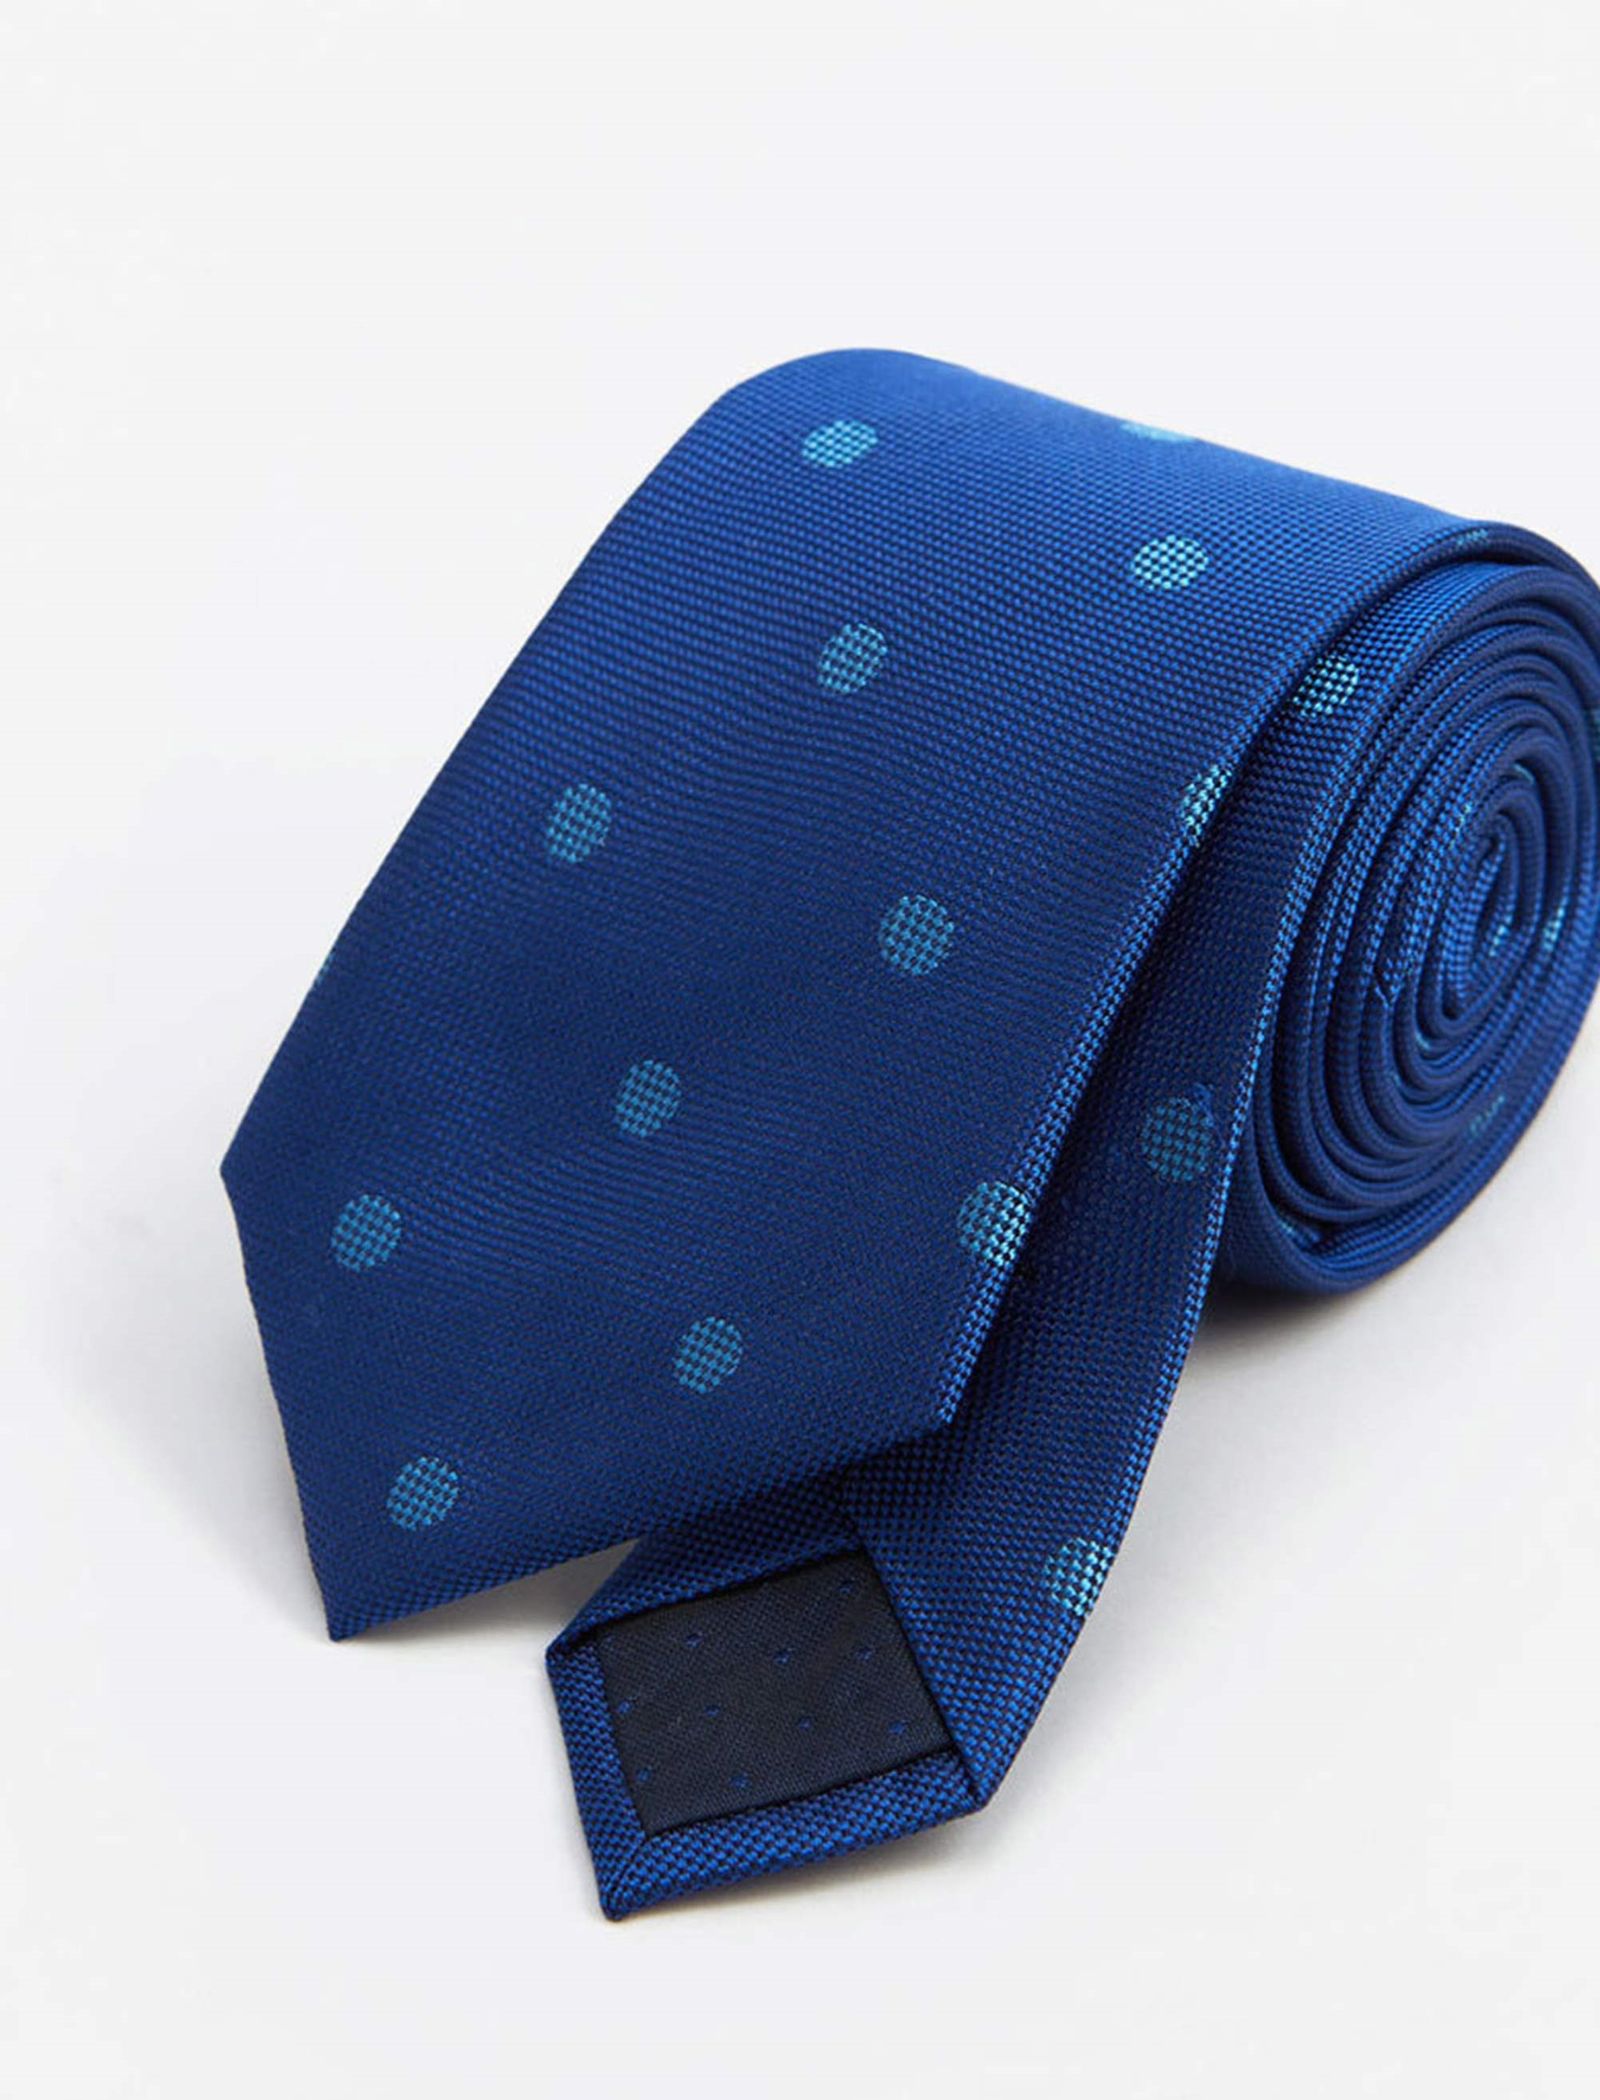 کراوات ابریشم طرح دار مردانه - مانگو - آبي - 3